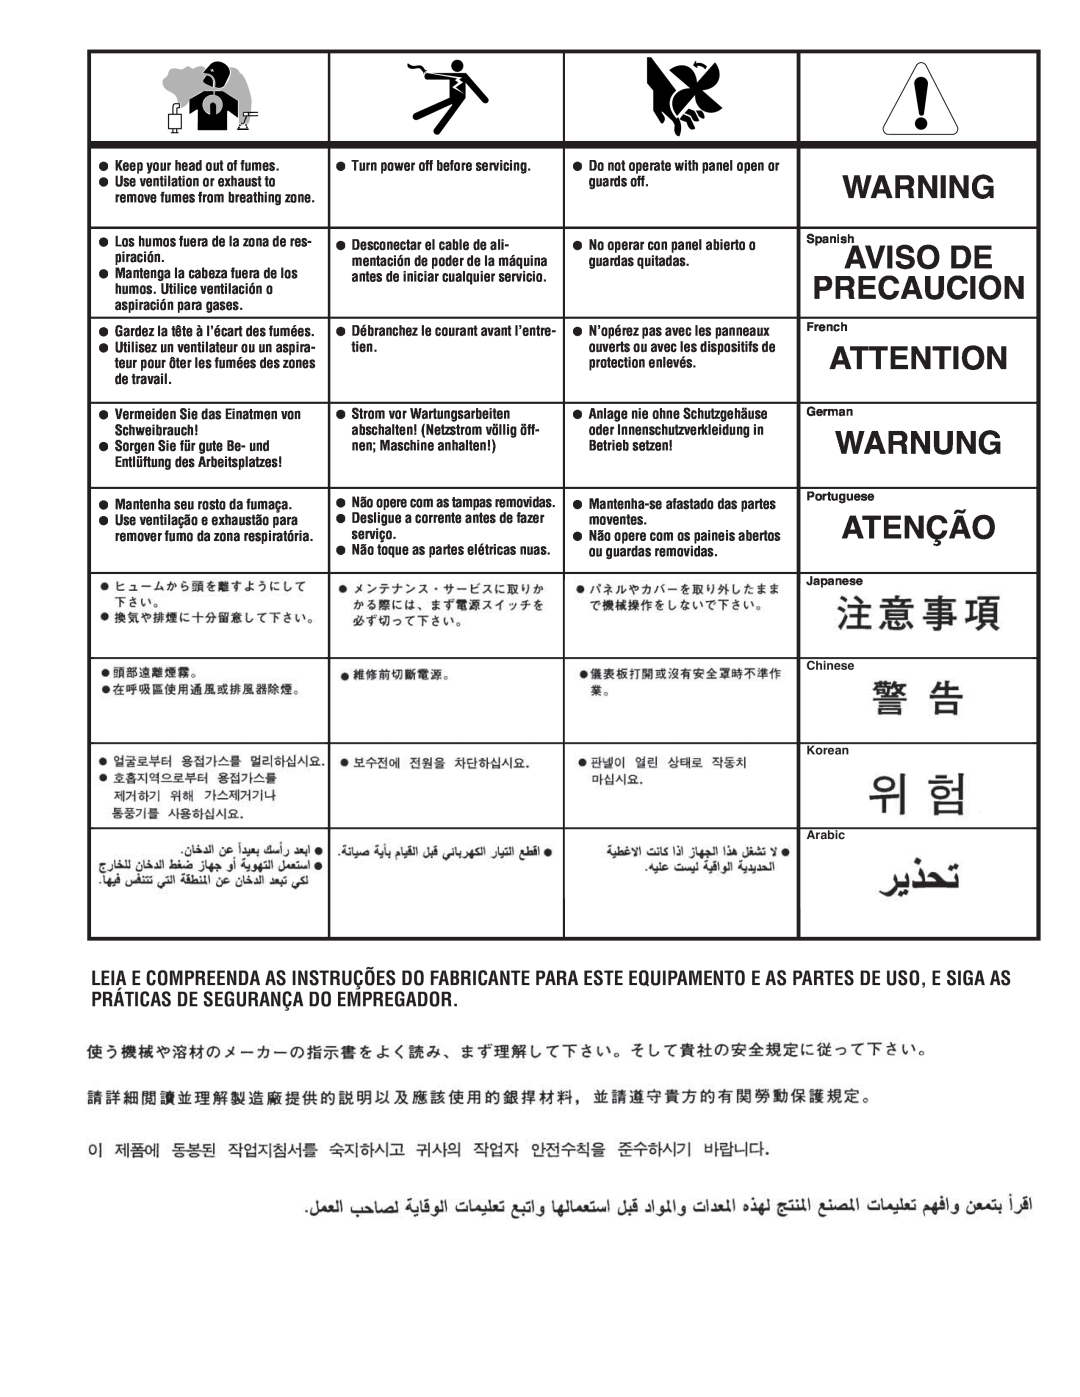 Lincoln Electric 500 manual Warnung, Atenção, Precaucion, Aviso De 